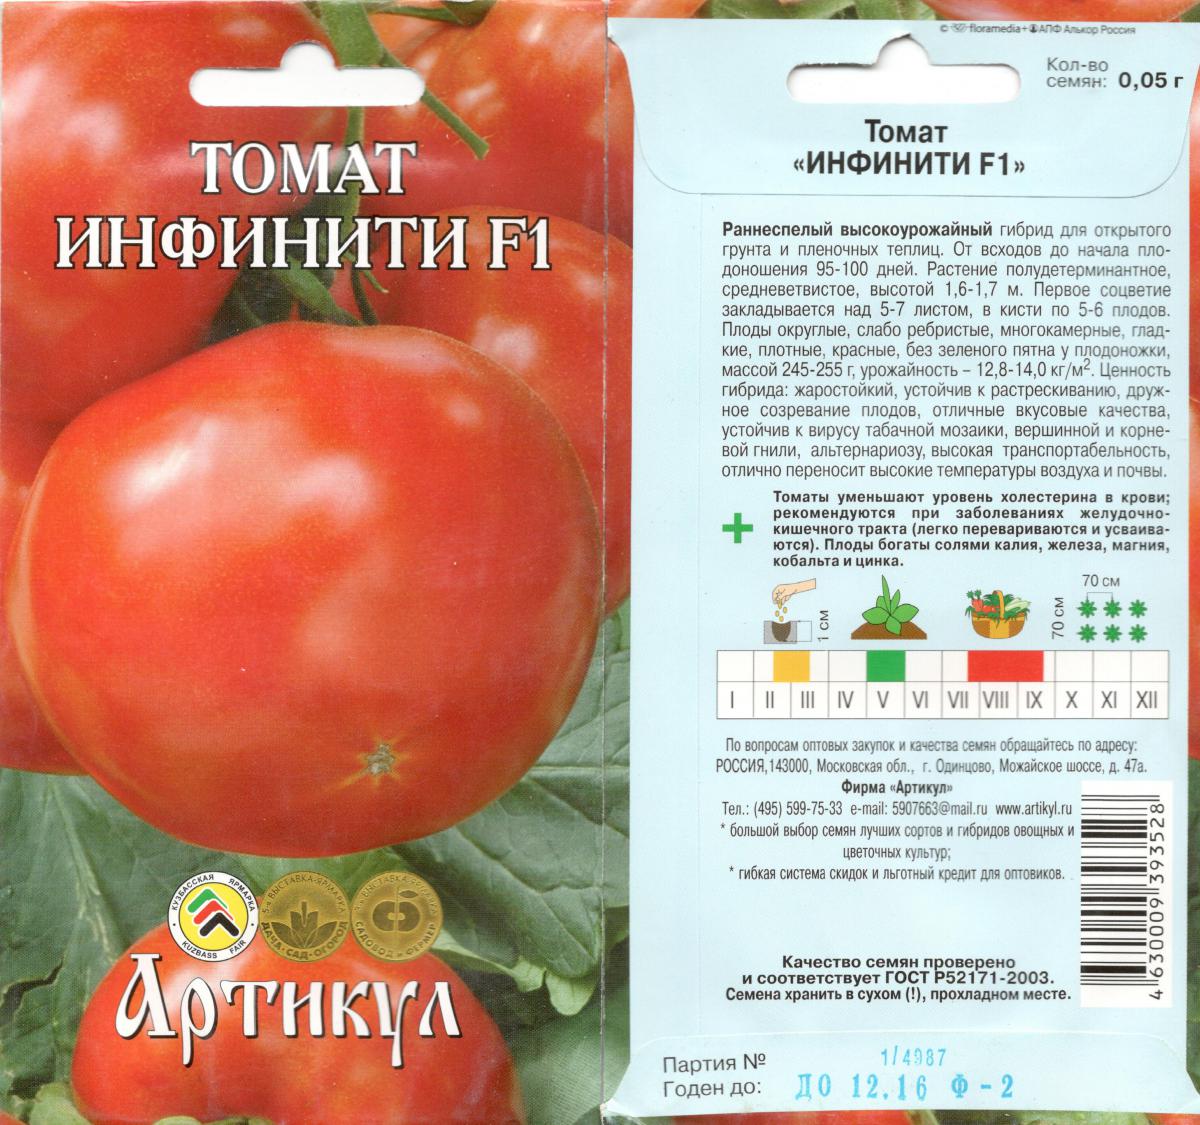 Черрипальчики: подробности агротехники авторского гибрида. описание миниатюрного томата и рекомендации по выращиванию